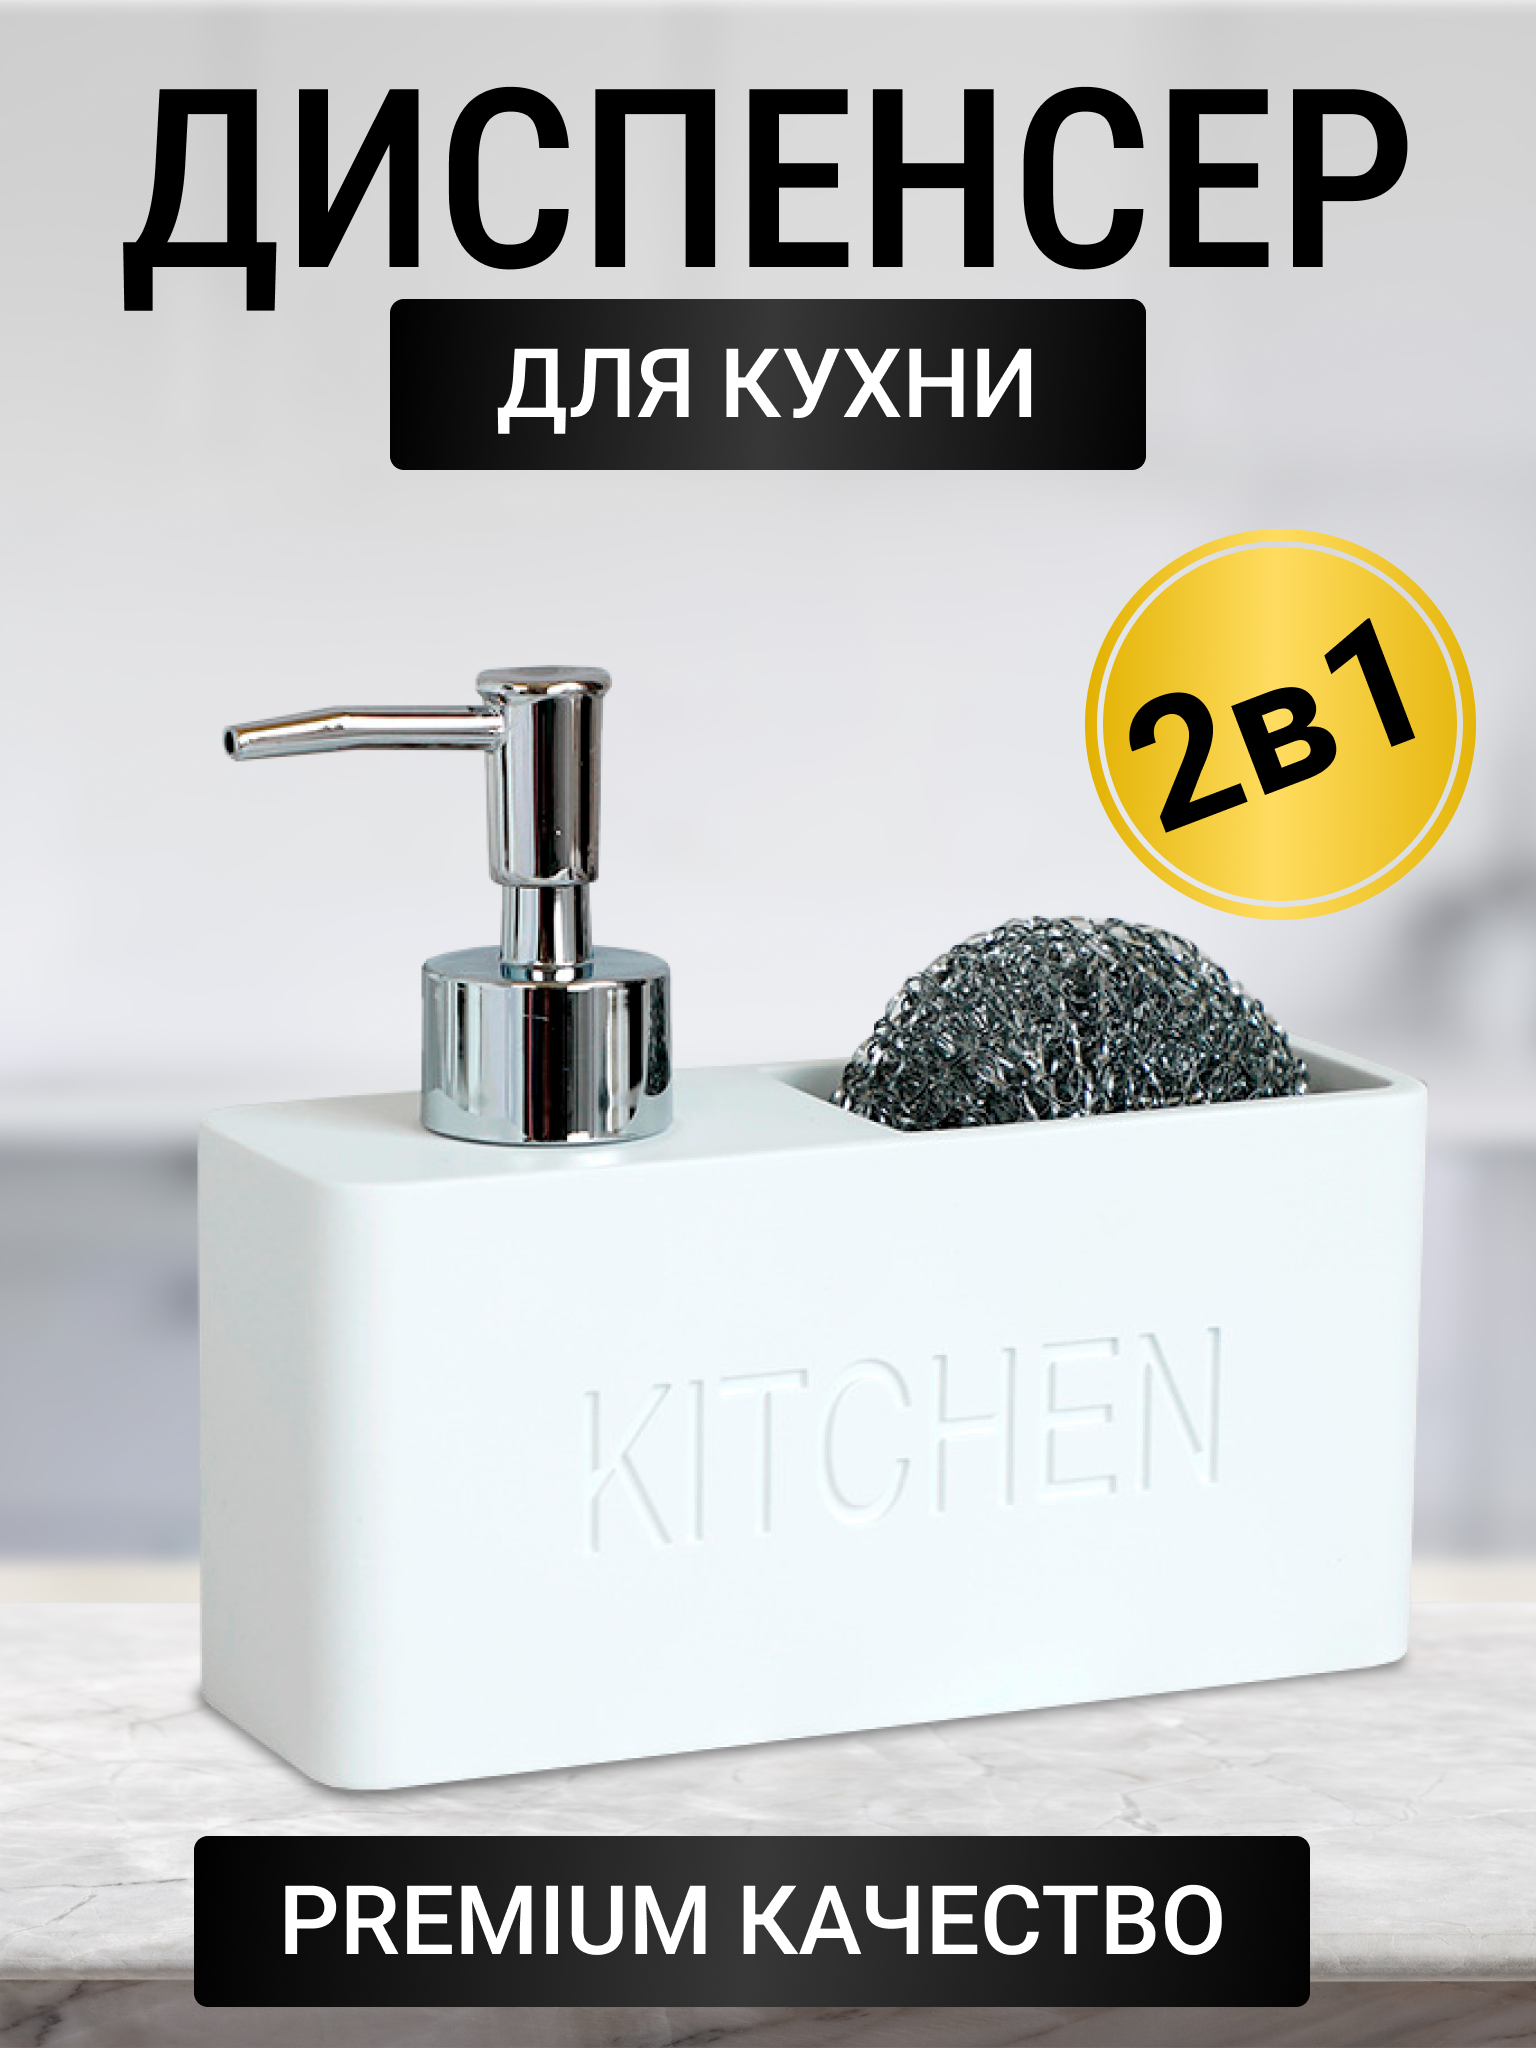 Дозатор для жидкого мыла моющего средства для кухни кухонный диспенсер средства для мытья посуды c губкой дозатор для кухни